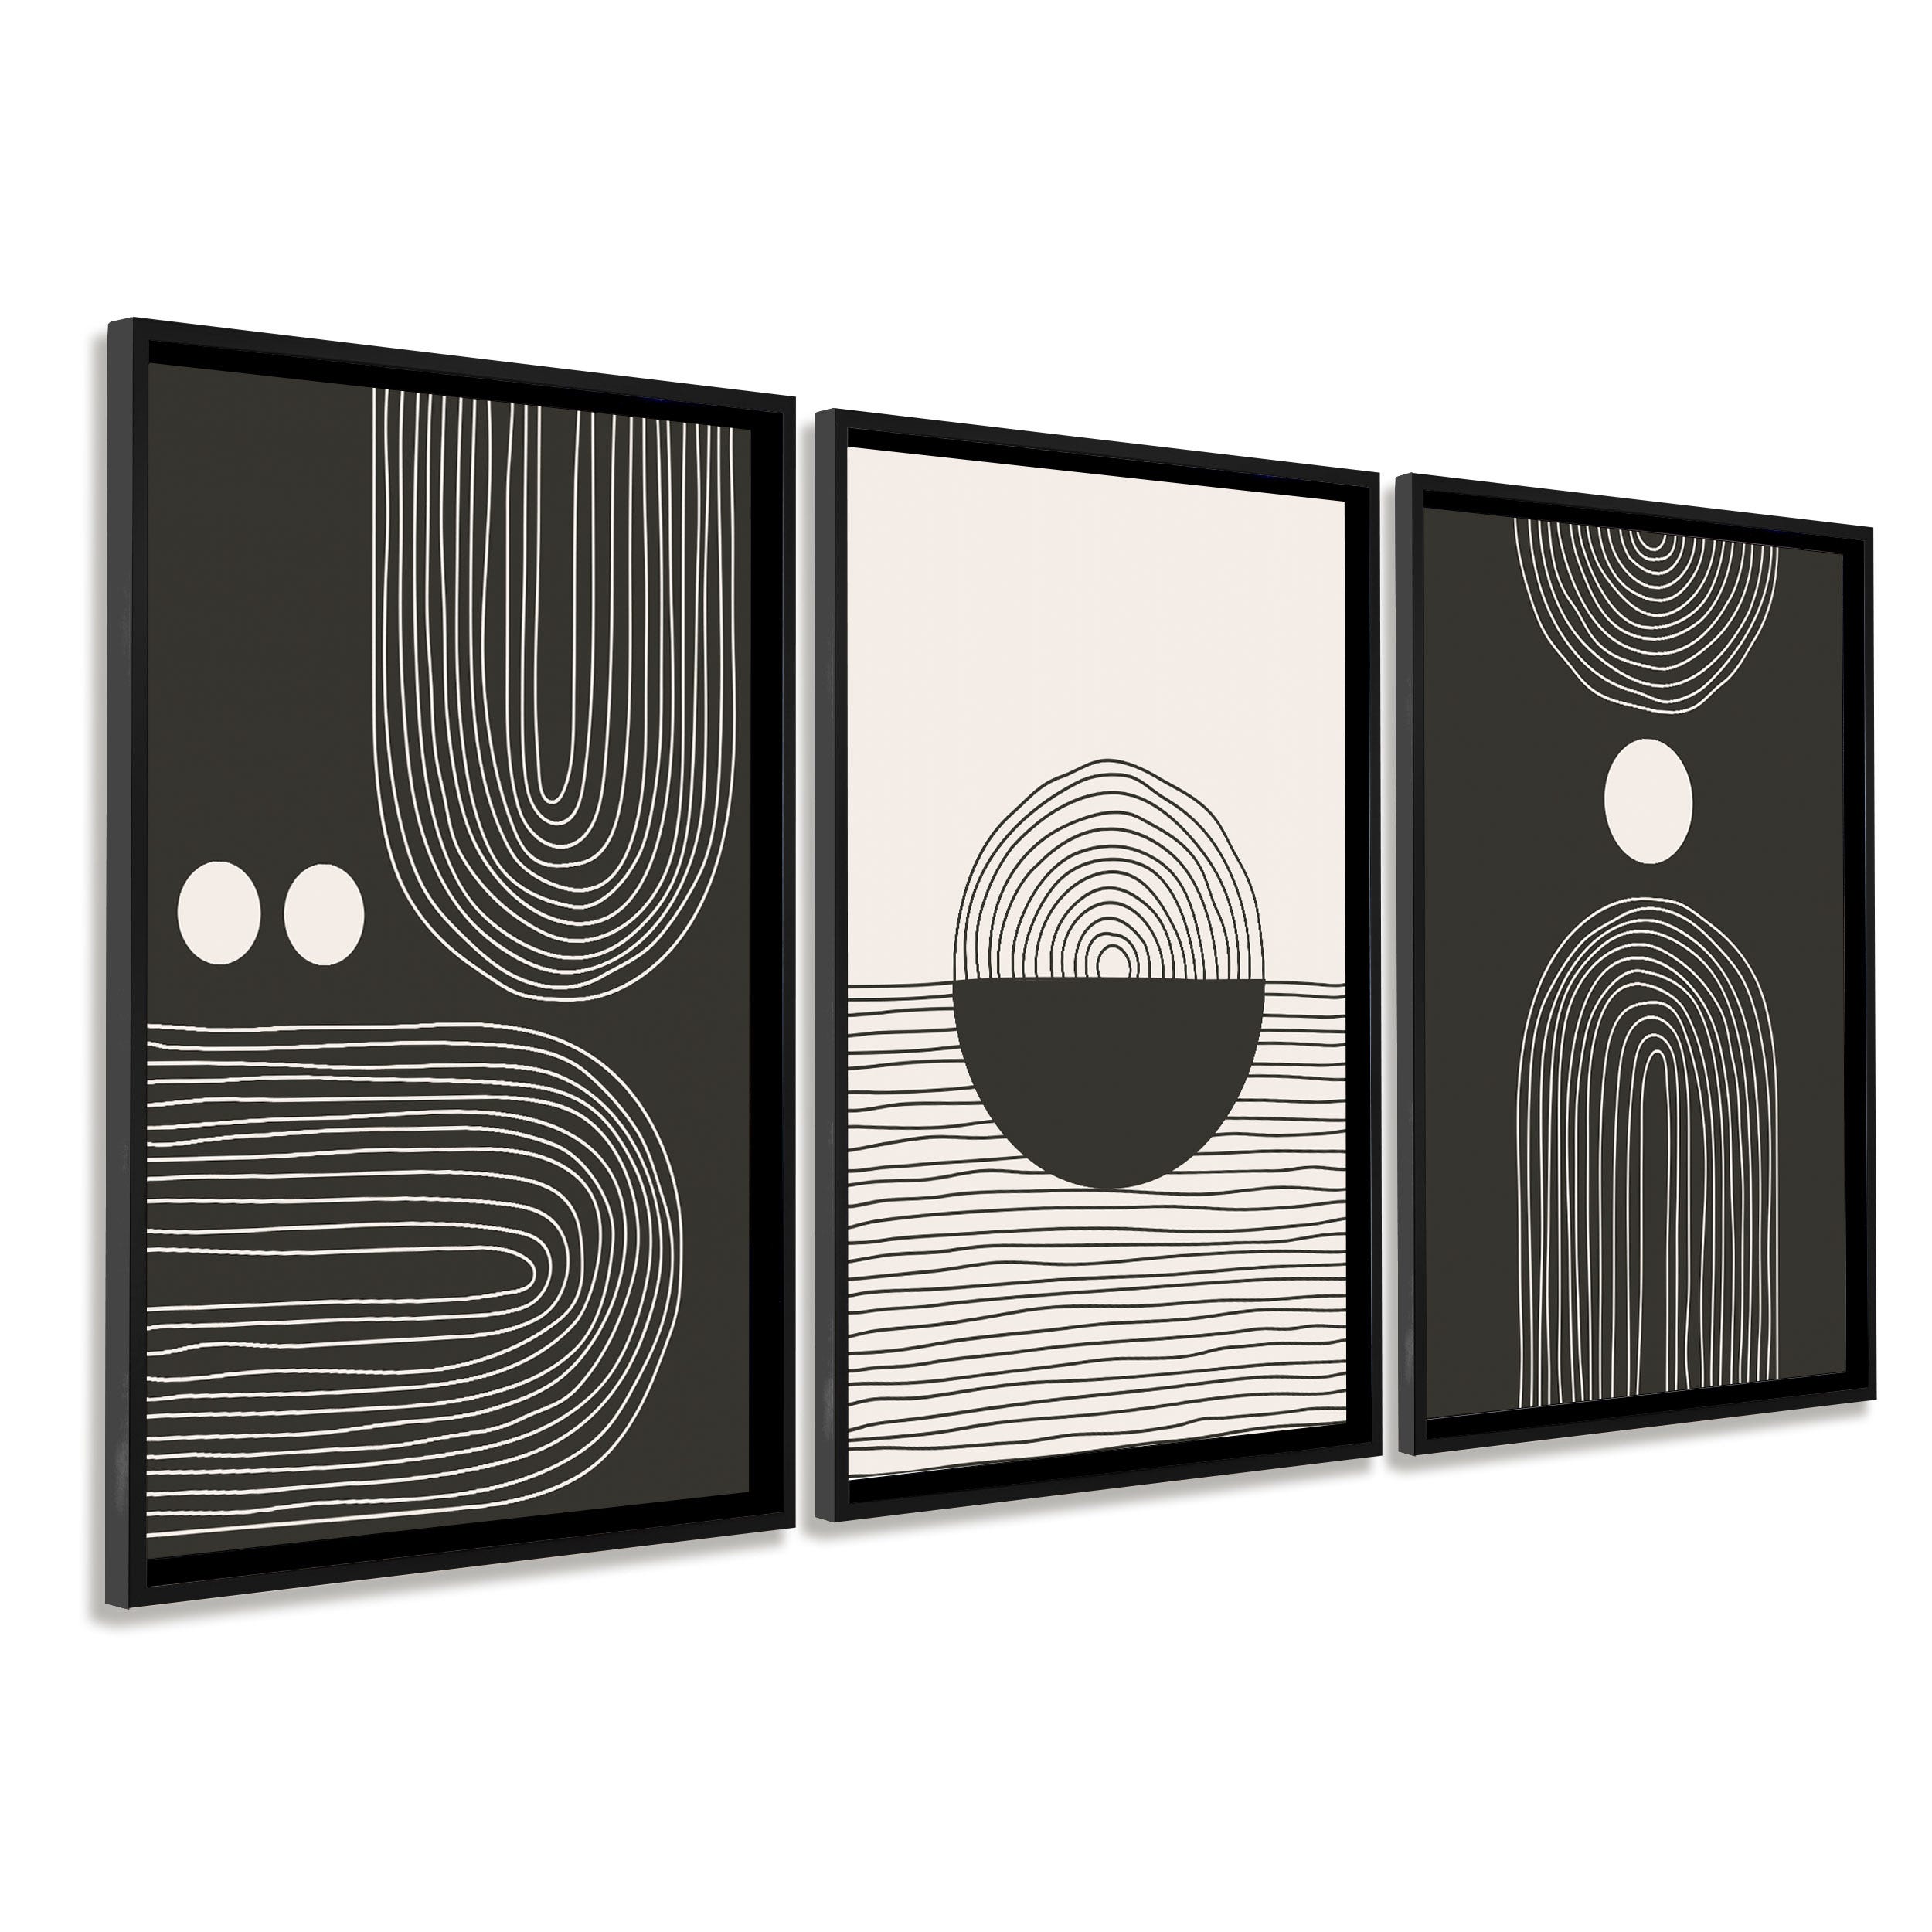 DekoArte - Quadros decorativos para sala modernos FORMAS GEOMÉTRICAS  MADEIRA 50x70 cm x3 peças - Quadros com moldura preta incluída.